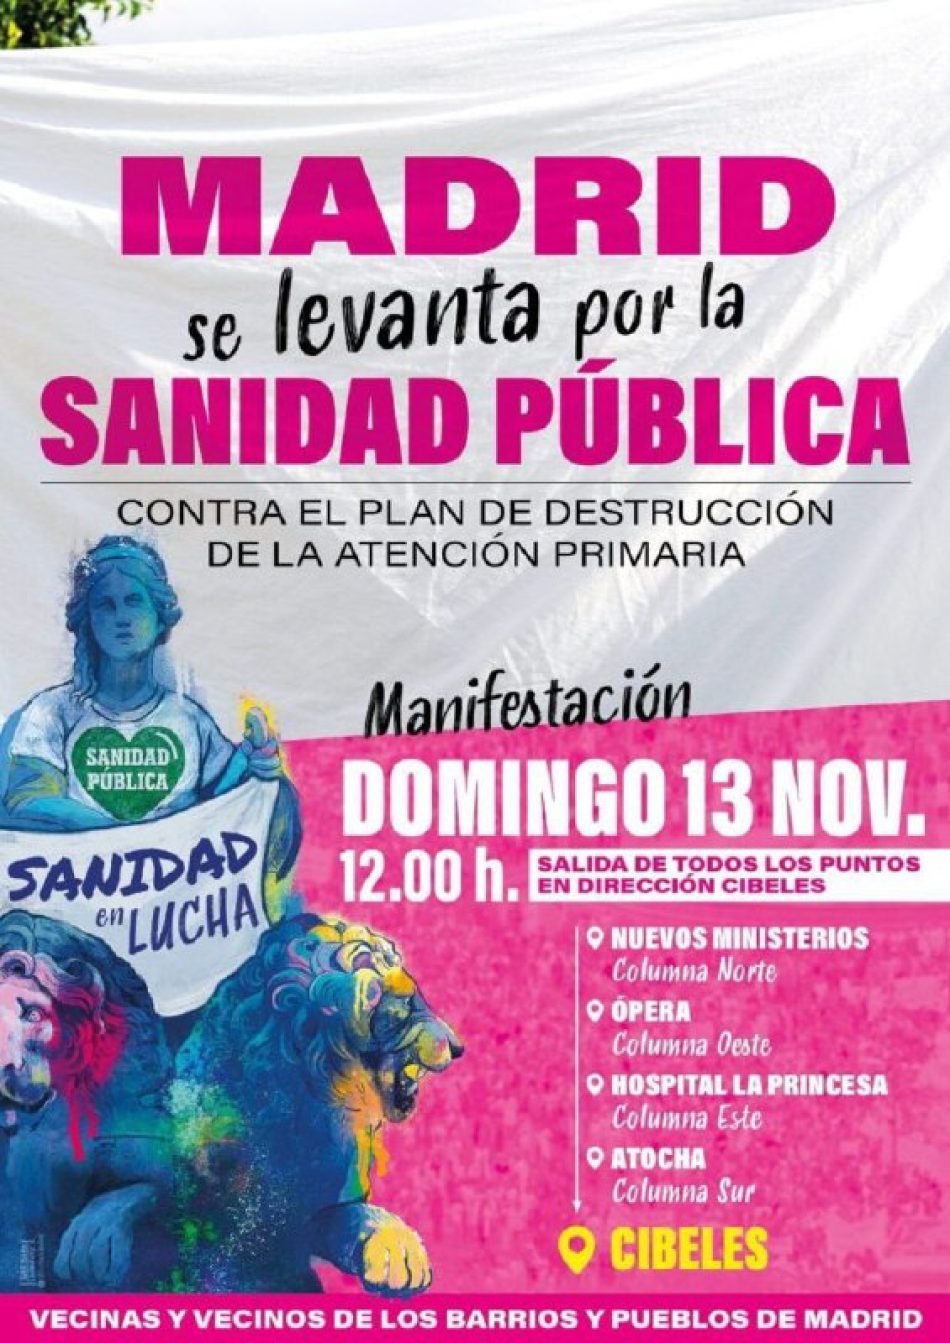 El Fórum Feminista de Madrid apoya y llama a participar en la manifestación del próximo 13 de noviembre Contra el Plan de destrucción de la Atención Primaria